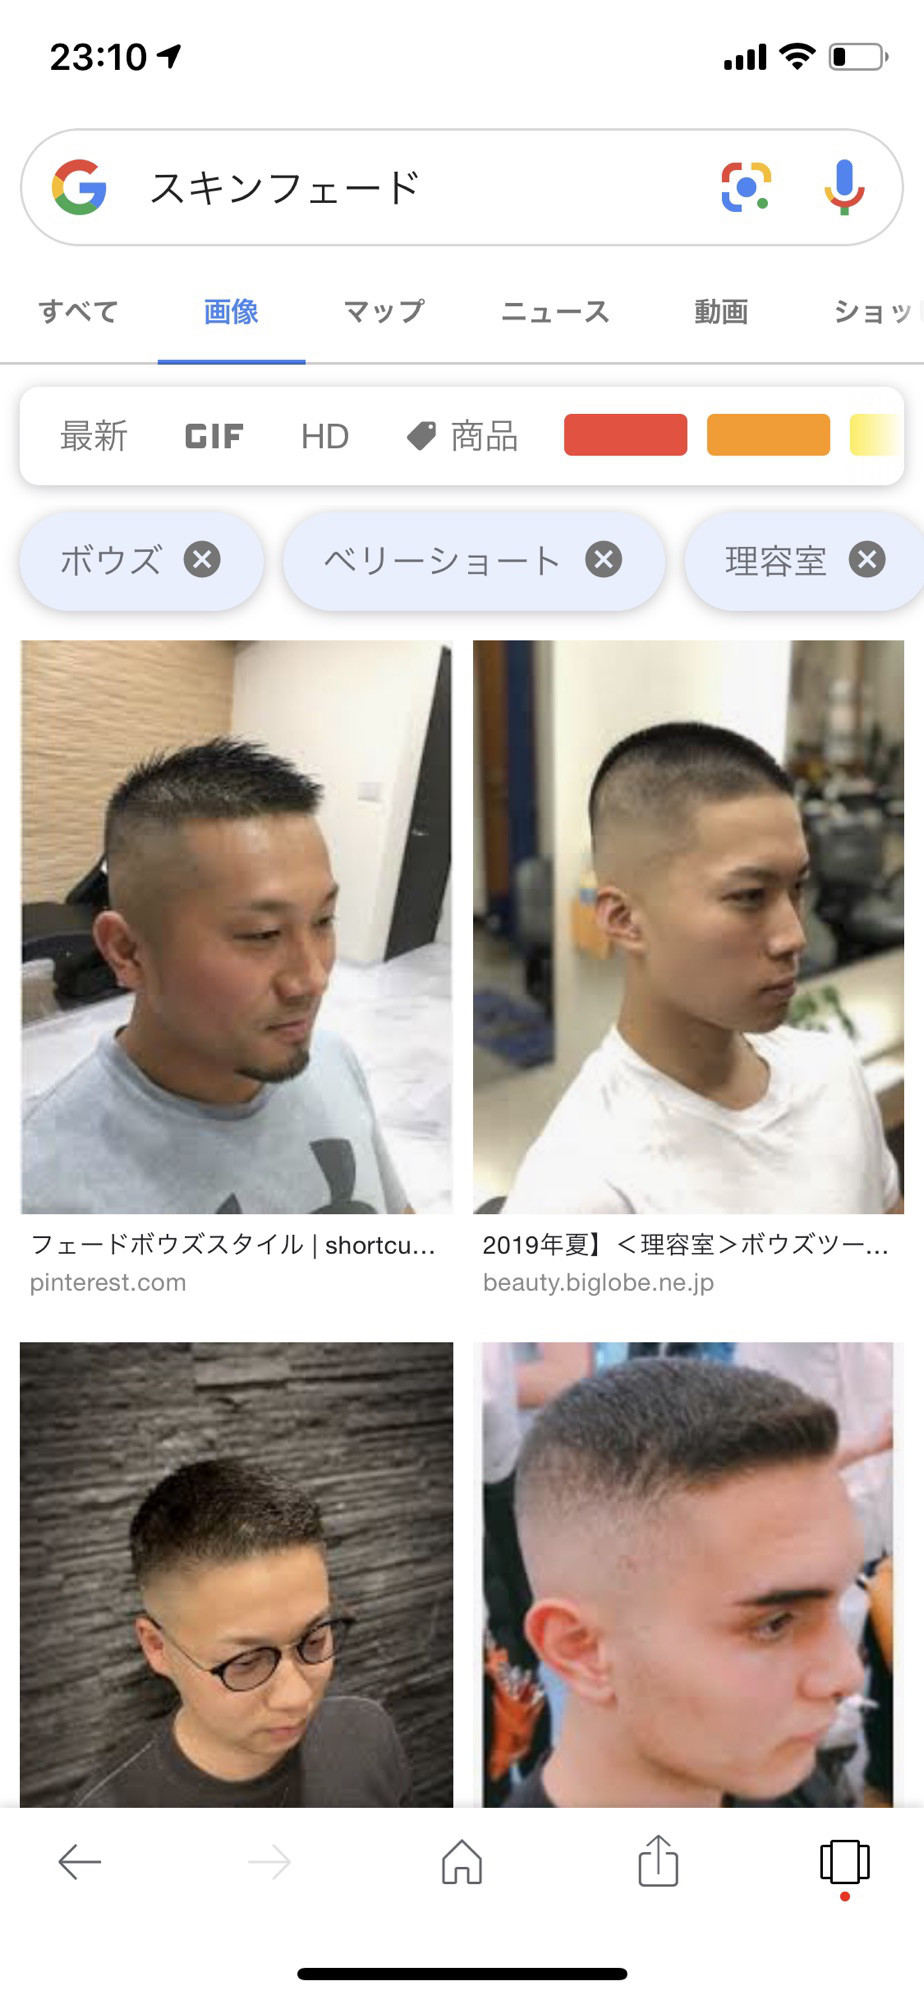 刈り上げを取り入れたヘアスタイルとフェードカット ショートとメンズカットが超得意な渋谷フリーランス美容師sasaki